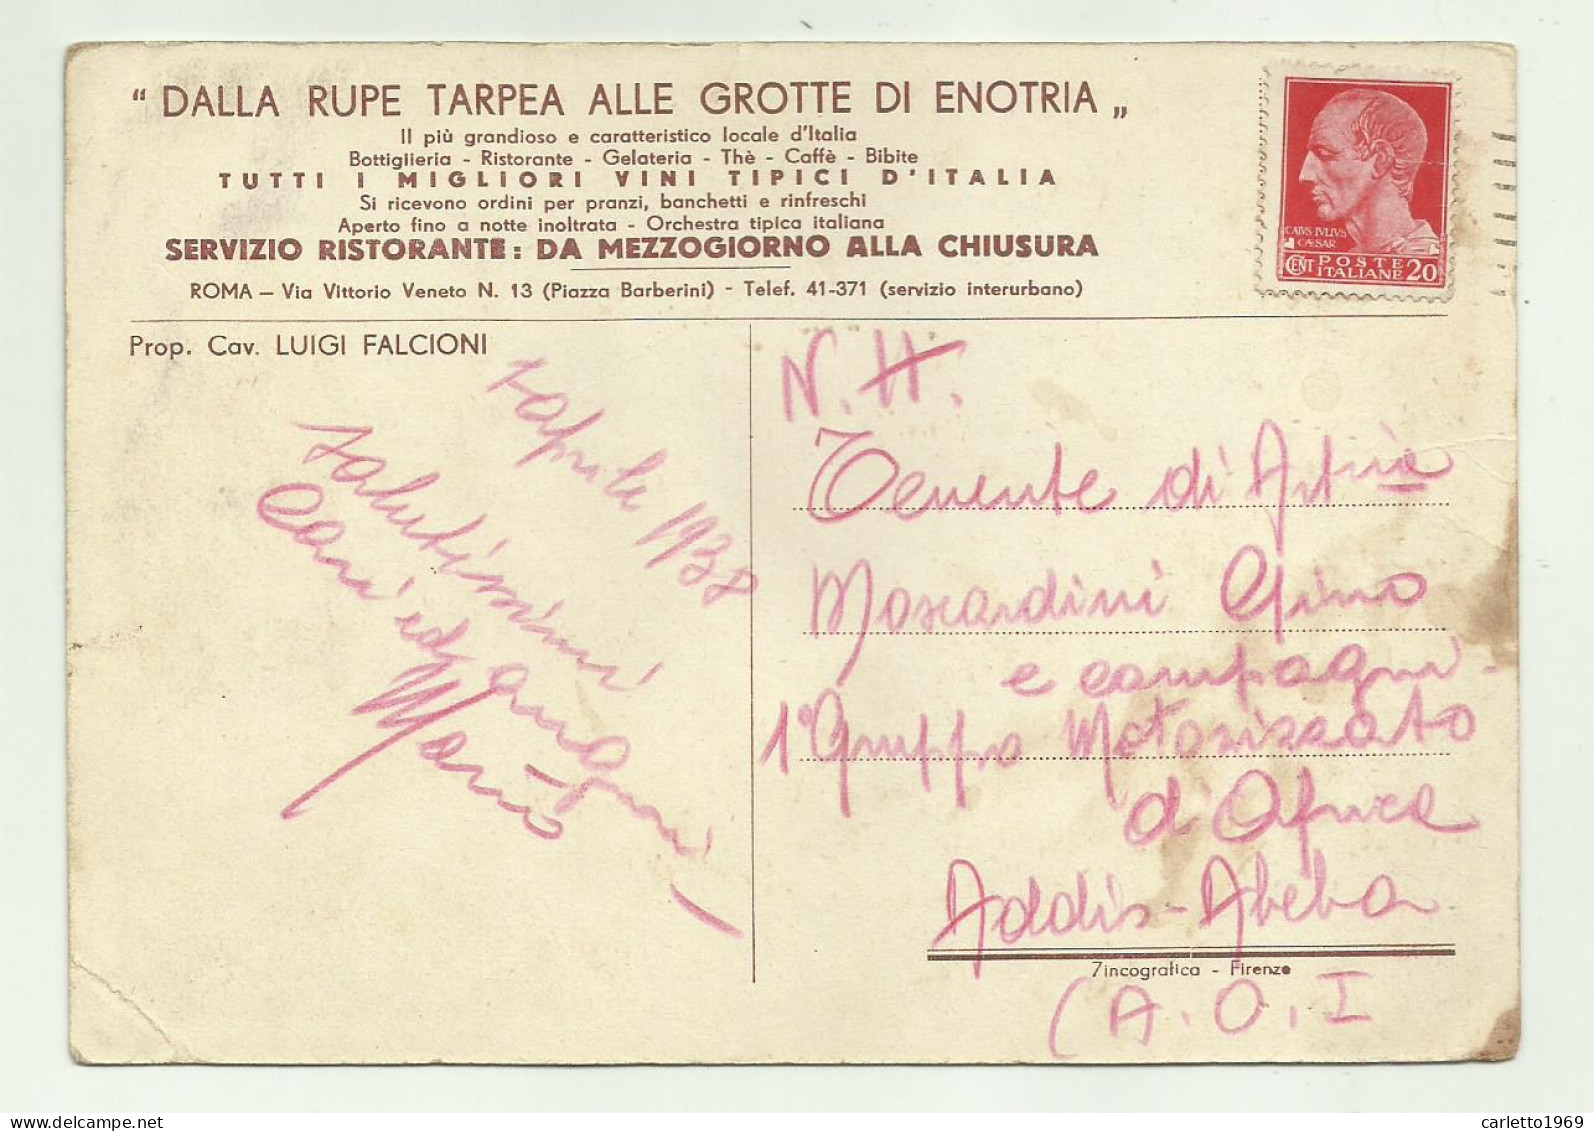 DALLA RUPE TARPEA ALLE GROTTE DI ENOTRIA 1938 - VIAGGIATA FG - Bares, Hoteles Y Restaurantes